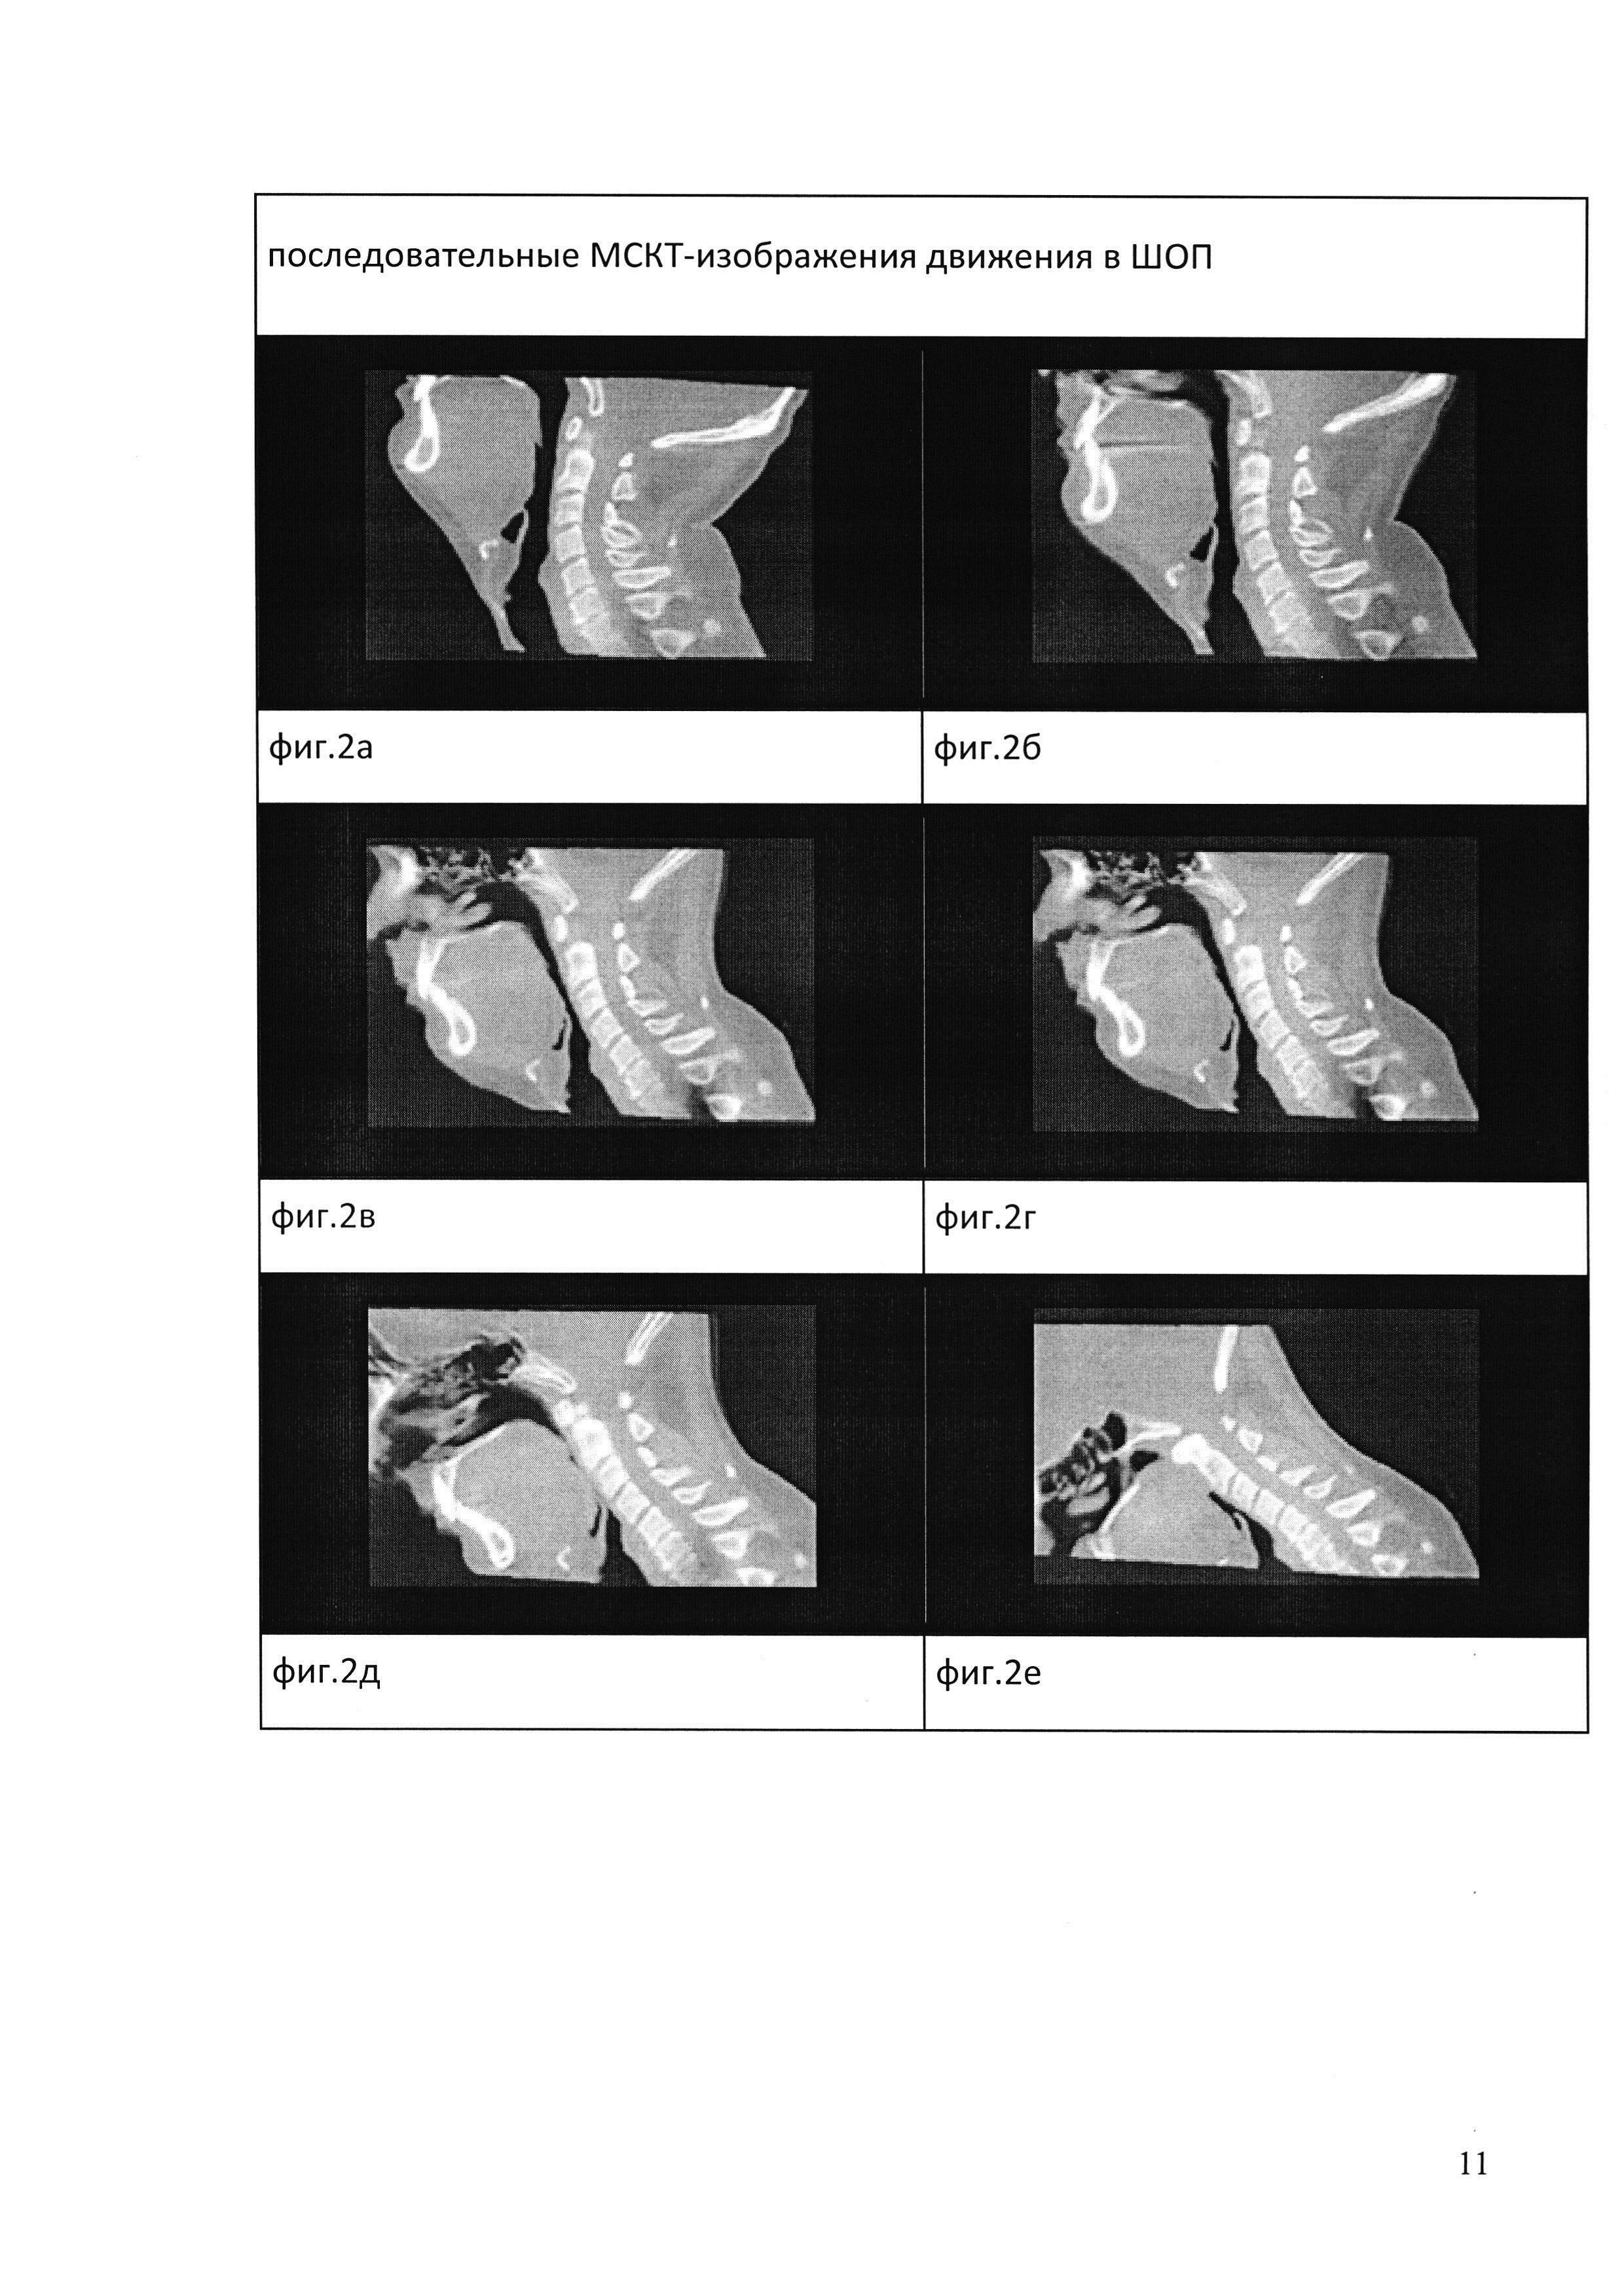 Способ функциональной мультиспиральной компьютерно-томографической диагностики нестабильности позвоночно-двигательных сегментов шейного отдела позвоночника